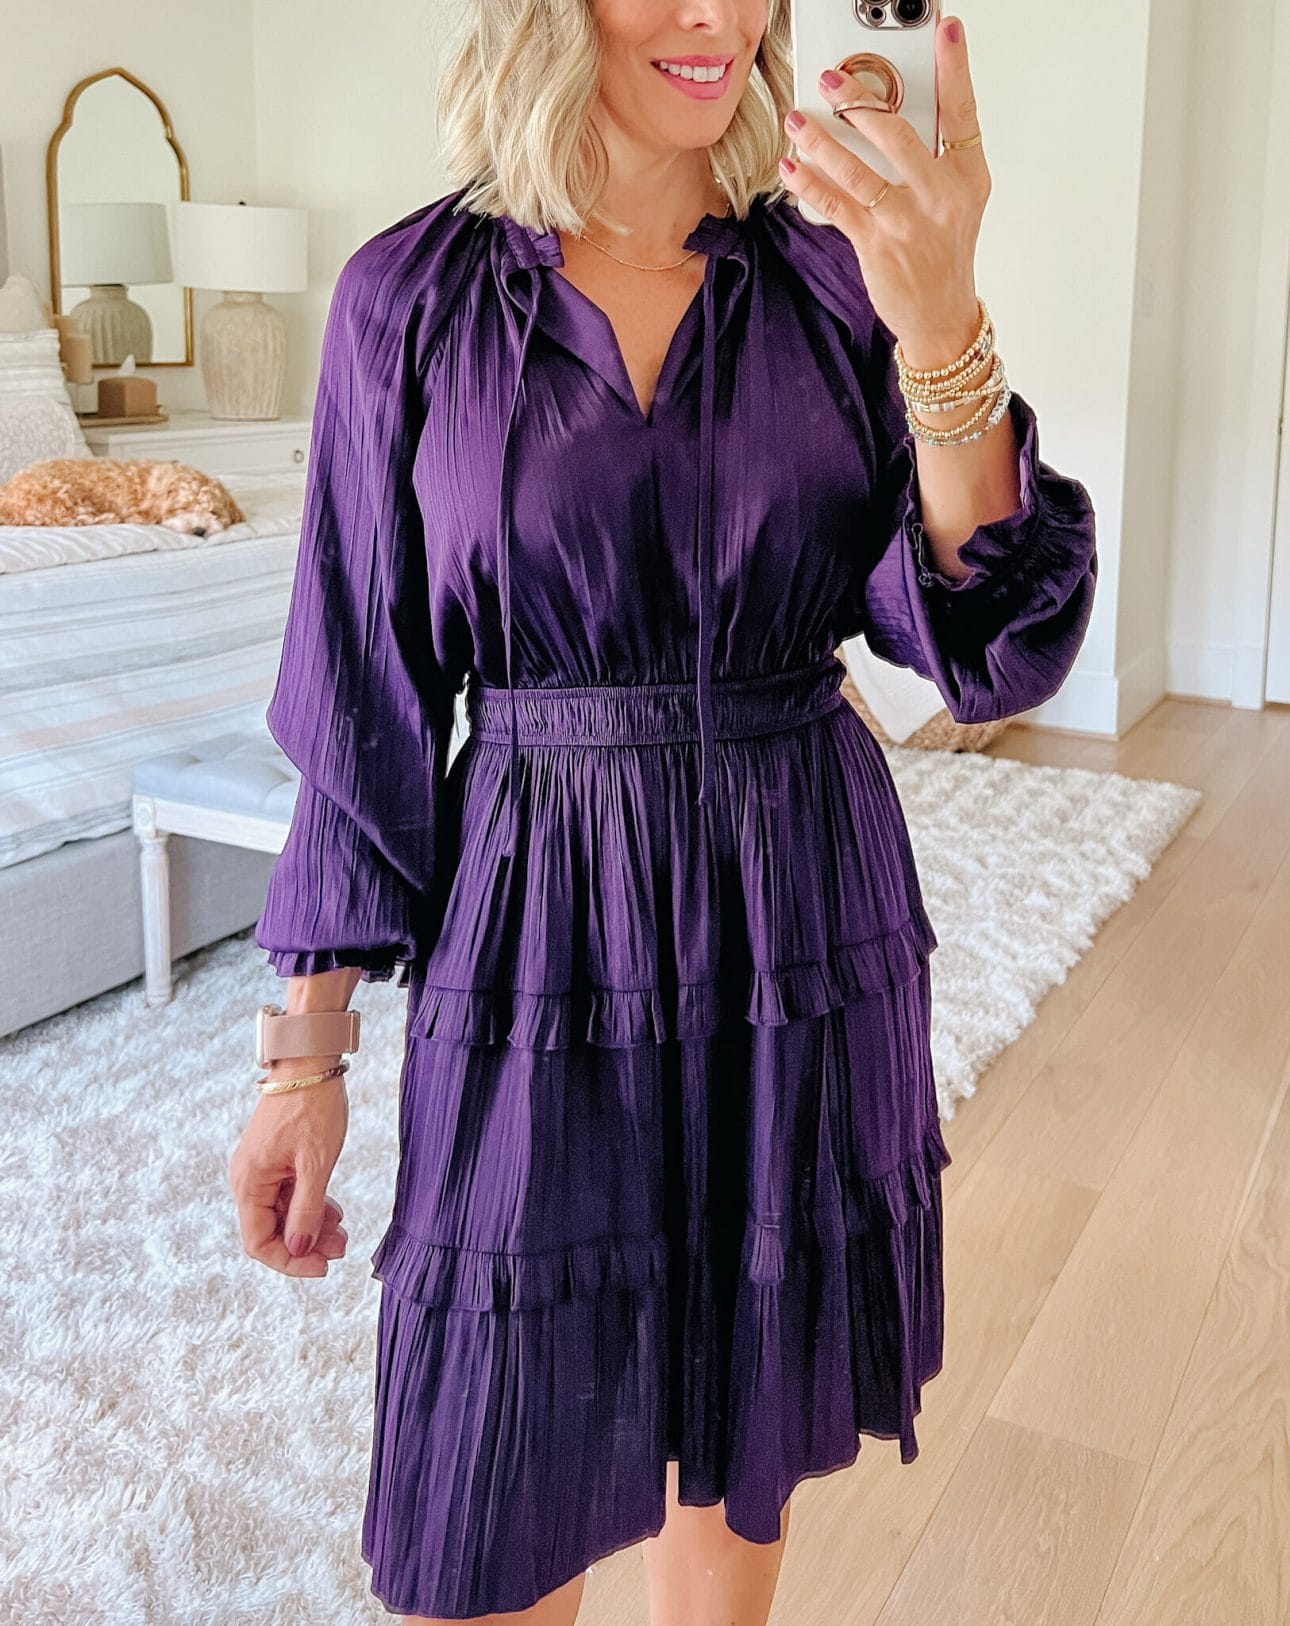 Purple Mini Dress, Heels